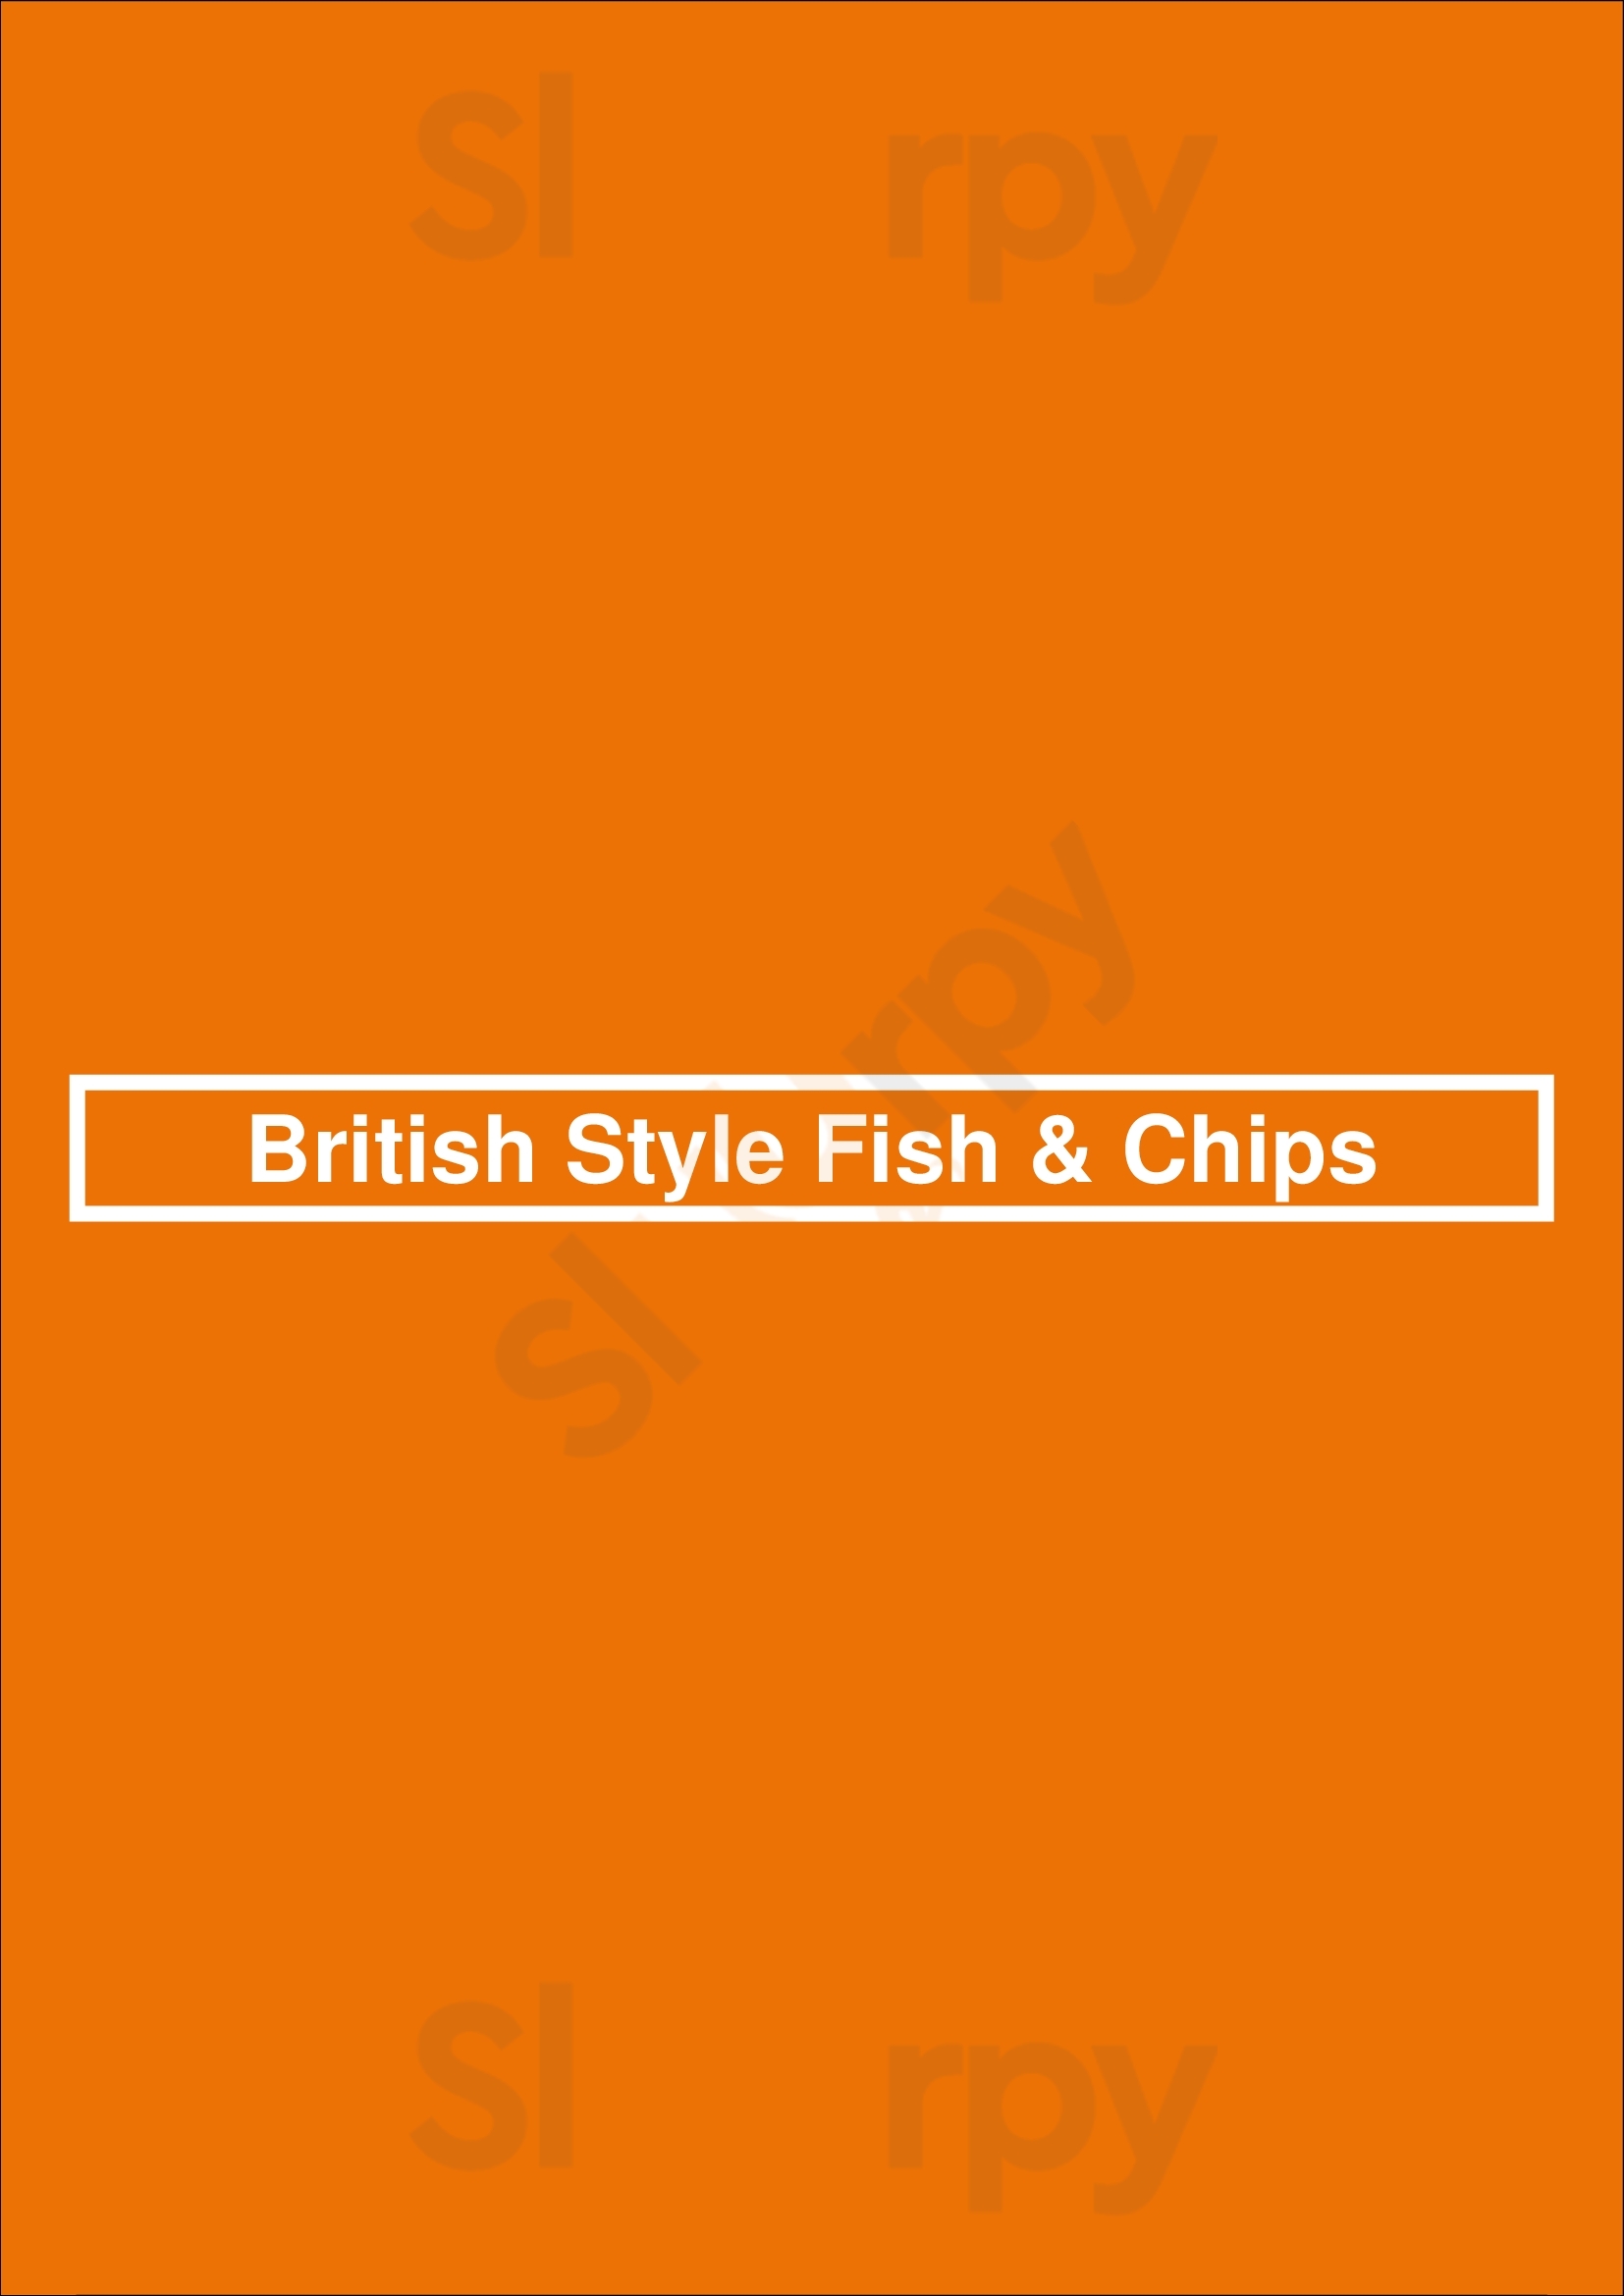 British Style Fish & Chips Toronto Menu - 1